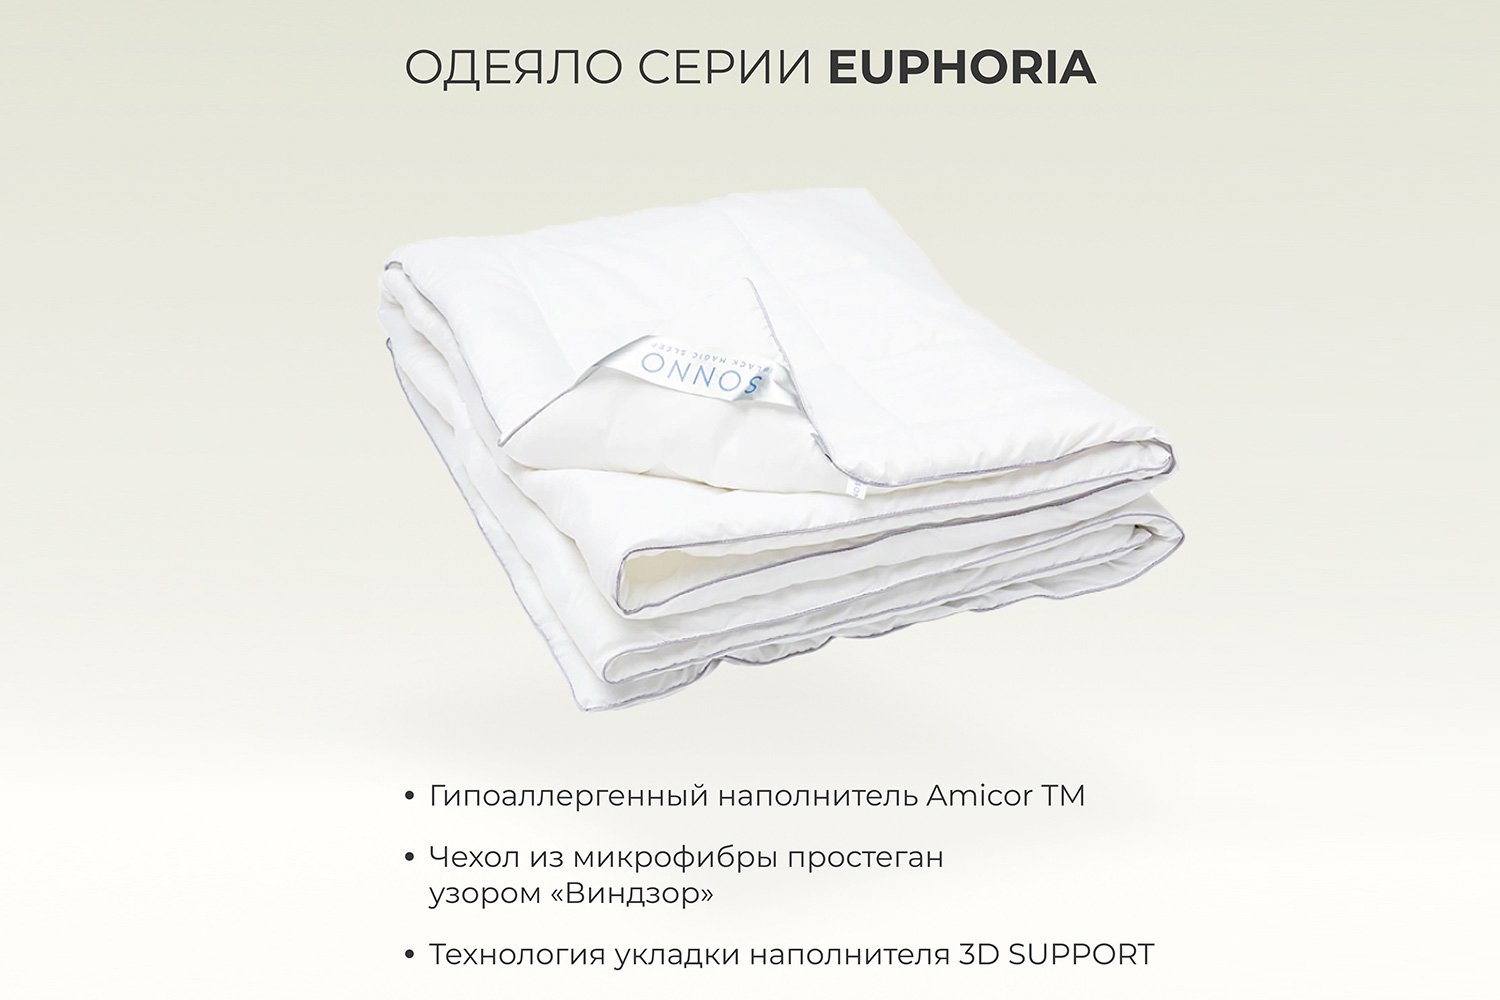 Одеяло sonno Euphoria